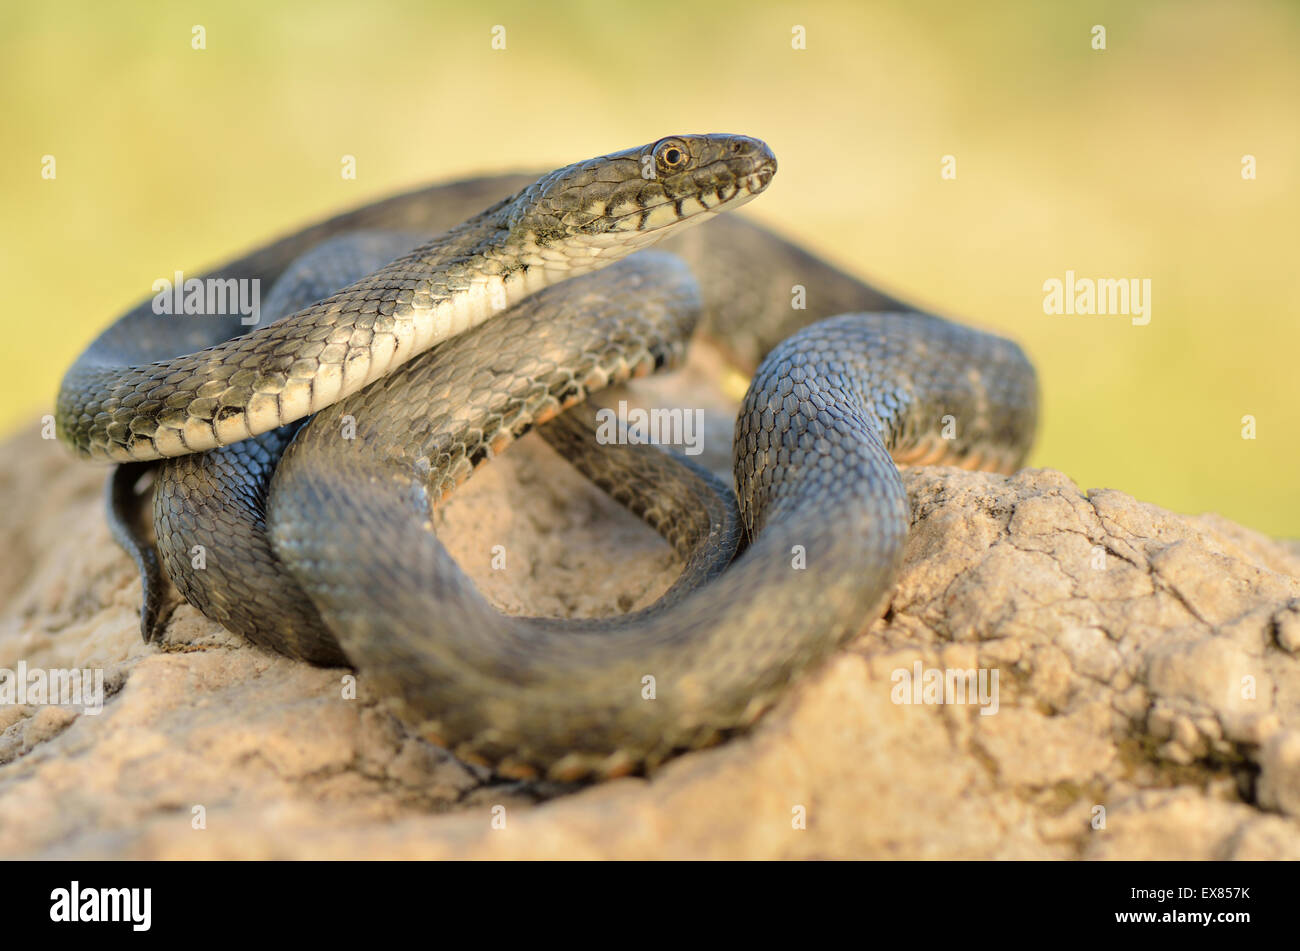 Dés adultes Snake (Natrix tessellata), Ruines de Patara, Lycie, côte lycienne, au sud-ouest de la Turquie Banque D'Images